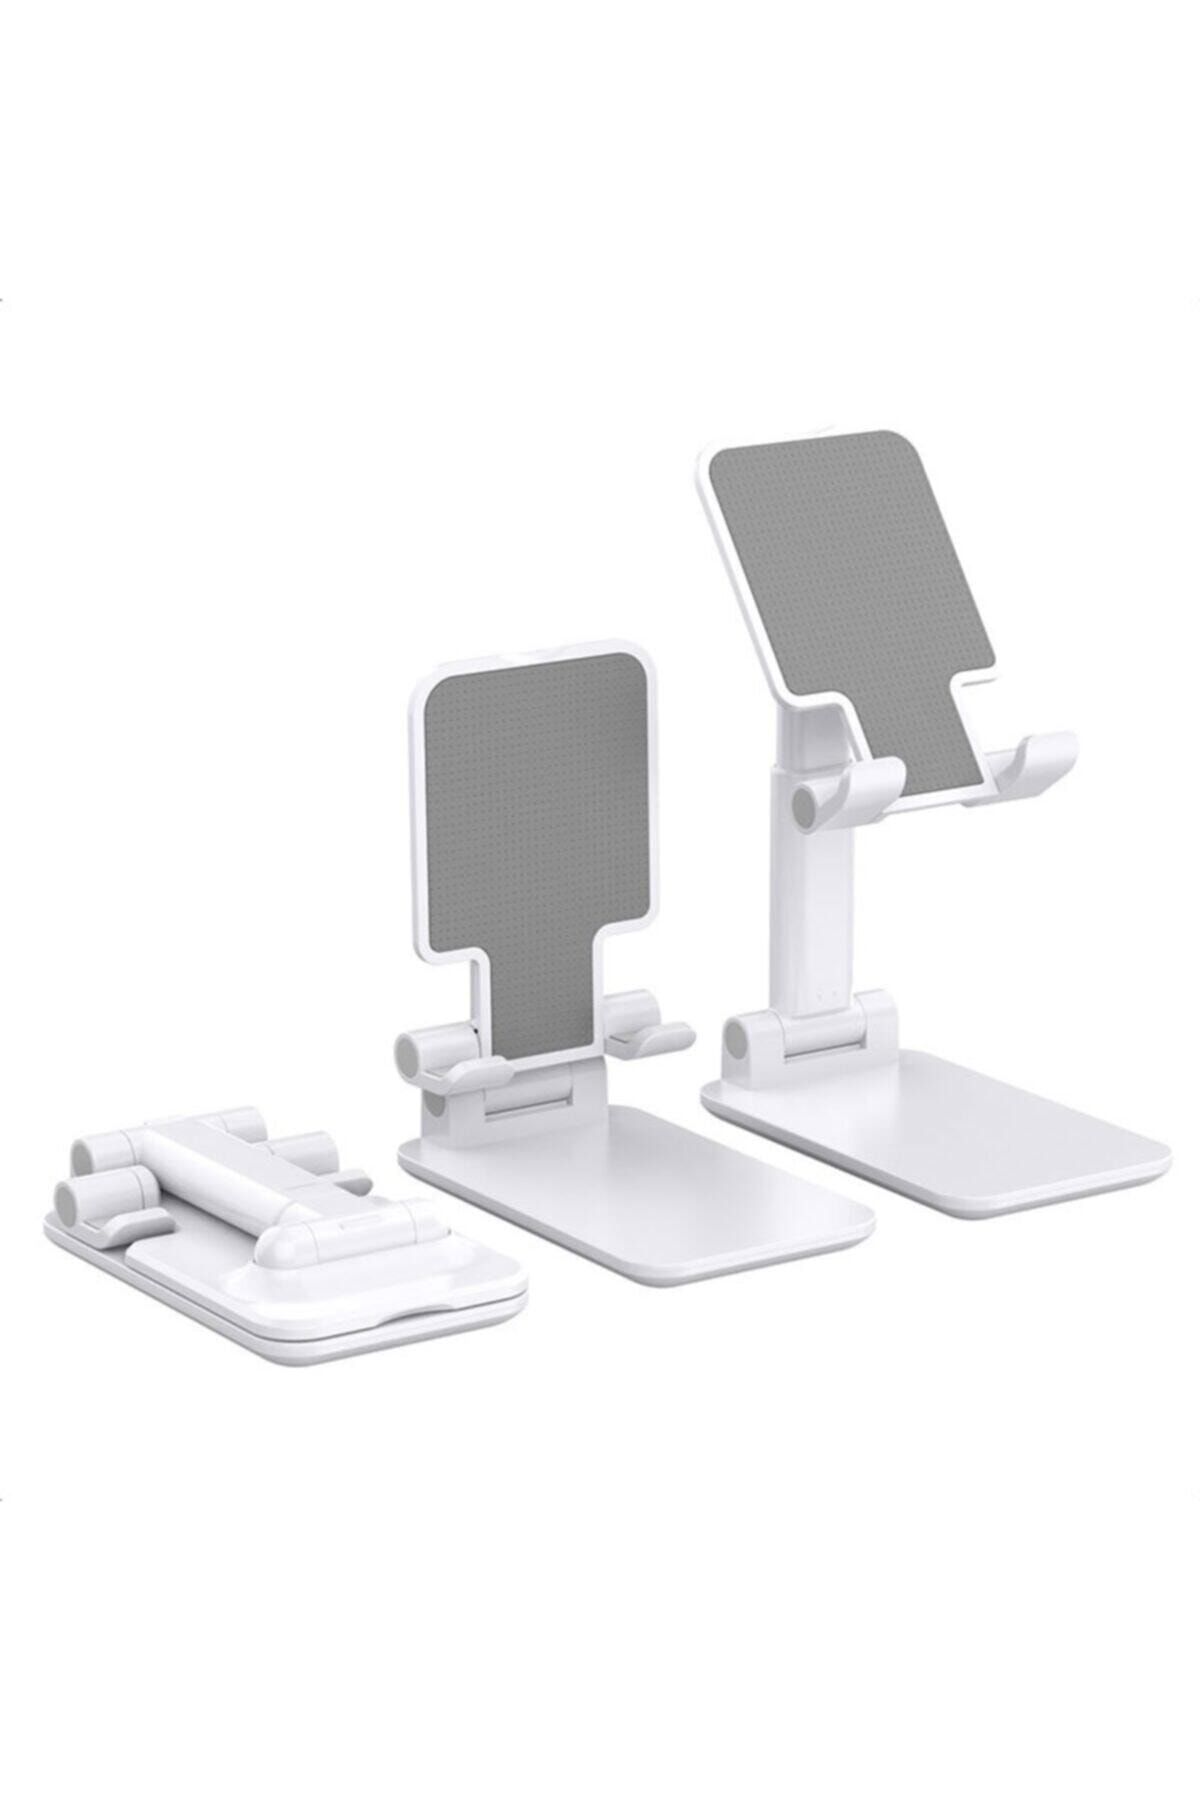 Twinix Masaüstü Telefon Tutucu Stant Masaüstü Tablet Tutacak Şarj Standı Beyaz